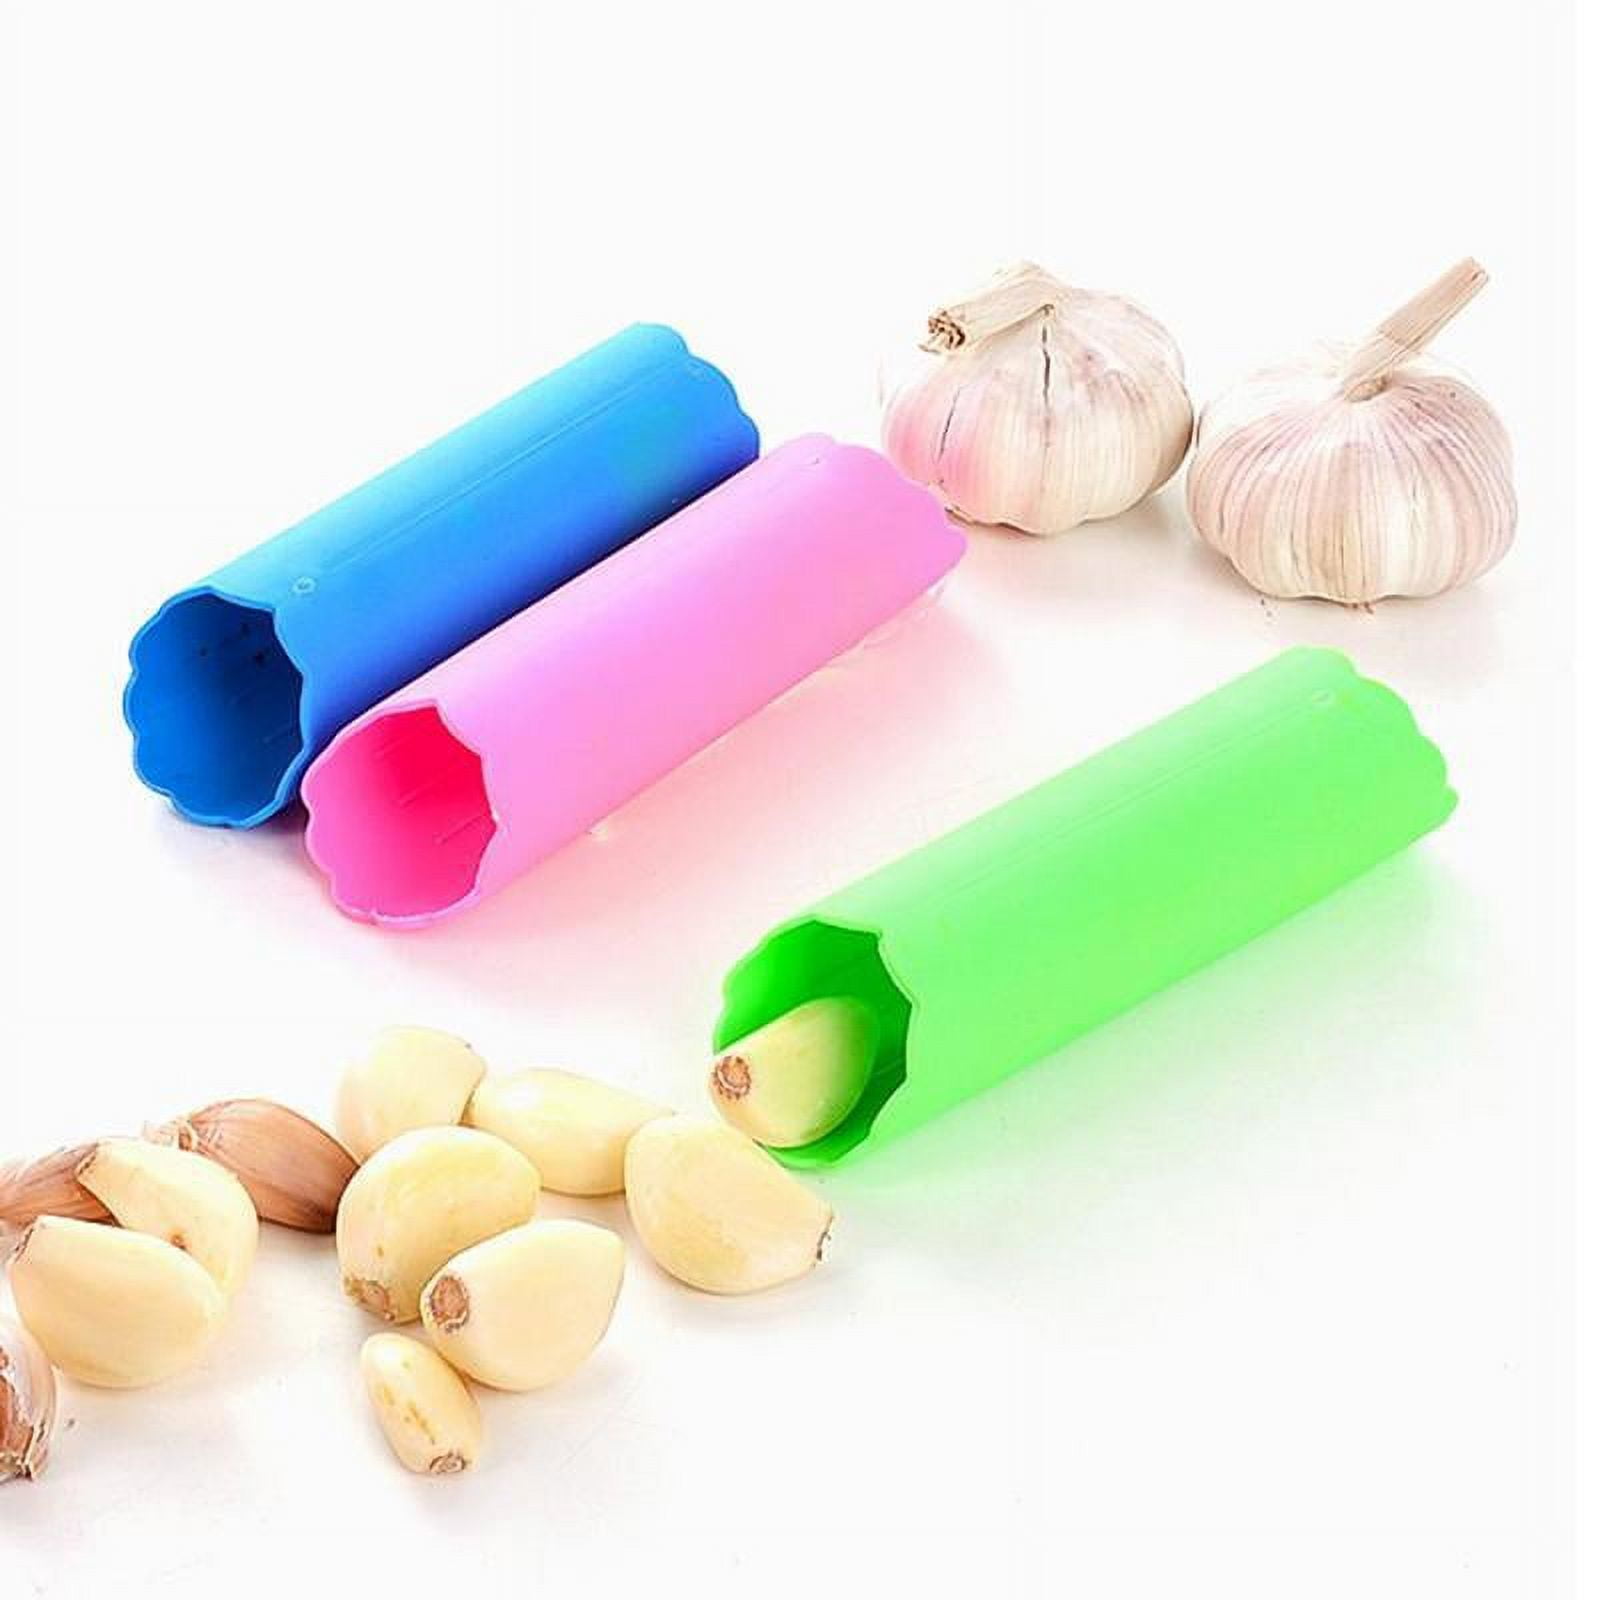 Acheter Silicone Garlic Peeler Roller Stripper - Upgrade Roll Tube:  Essential Kitchen Gadget for Effortless Garlic Preparation (1Pcs)